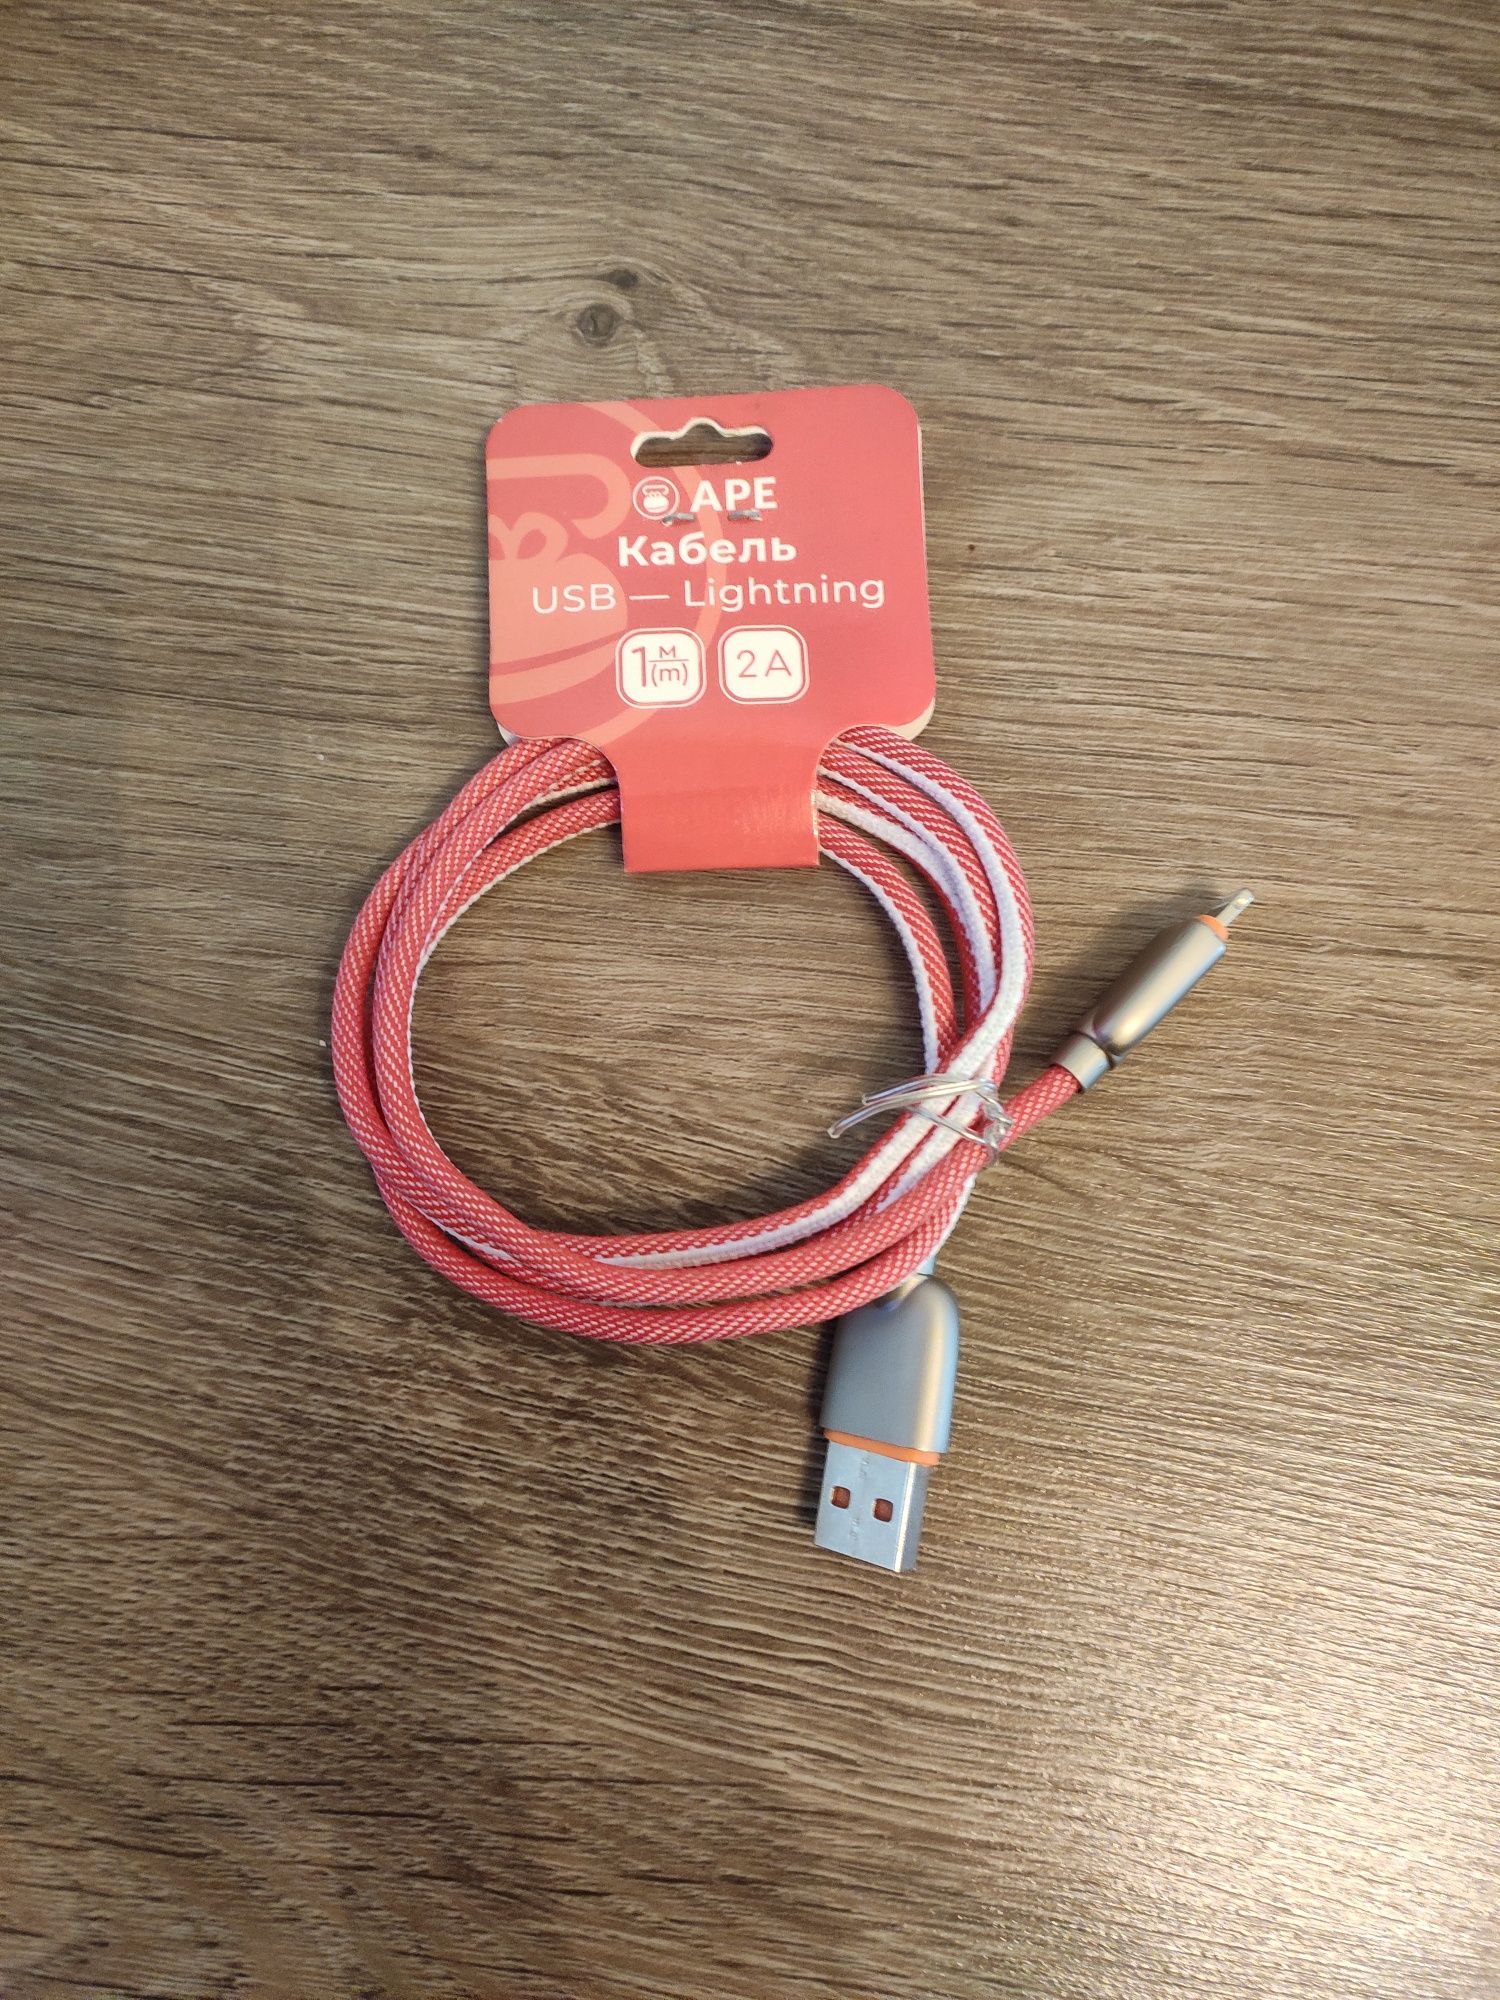 Продам кабель Lightning - USB 1м для iPhone/iPad/iPod 2А